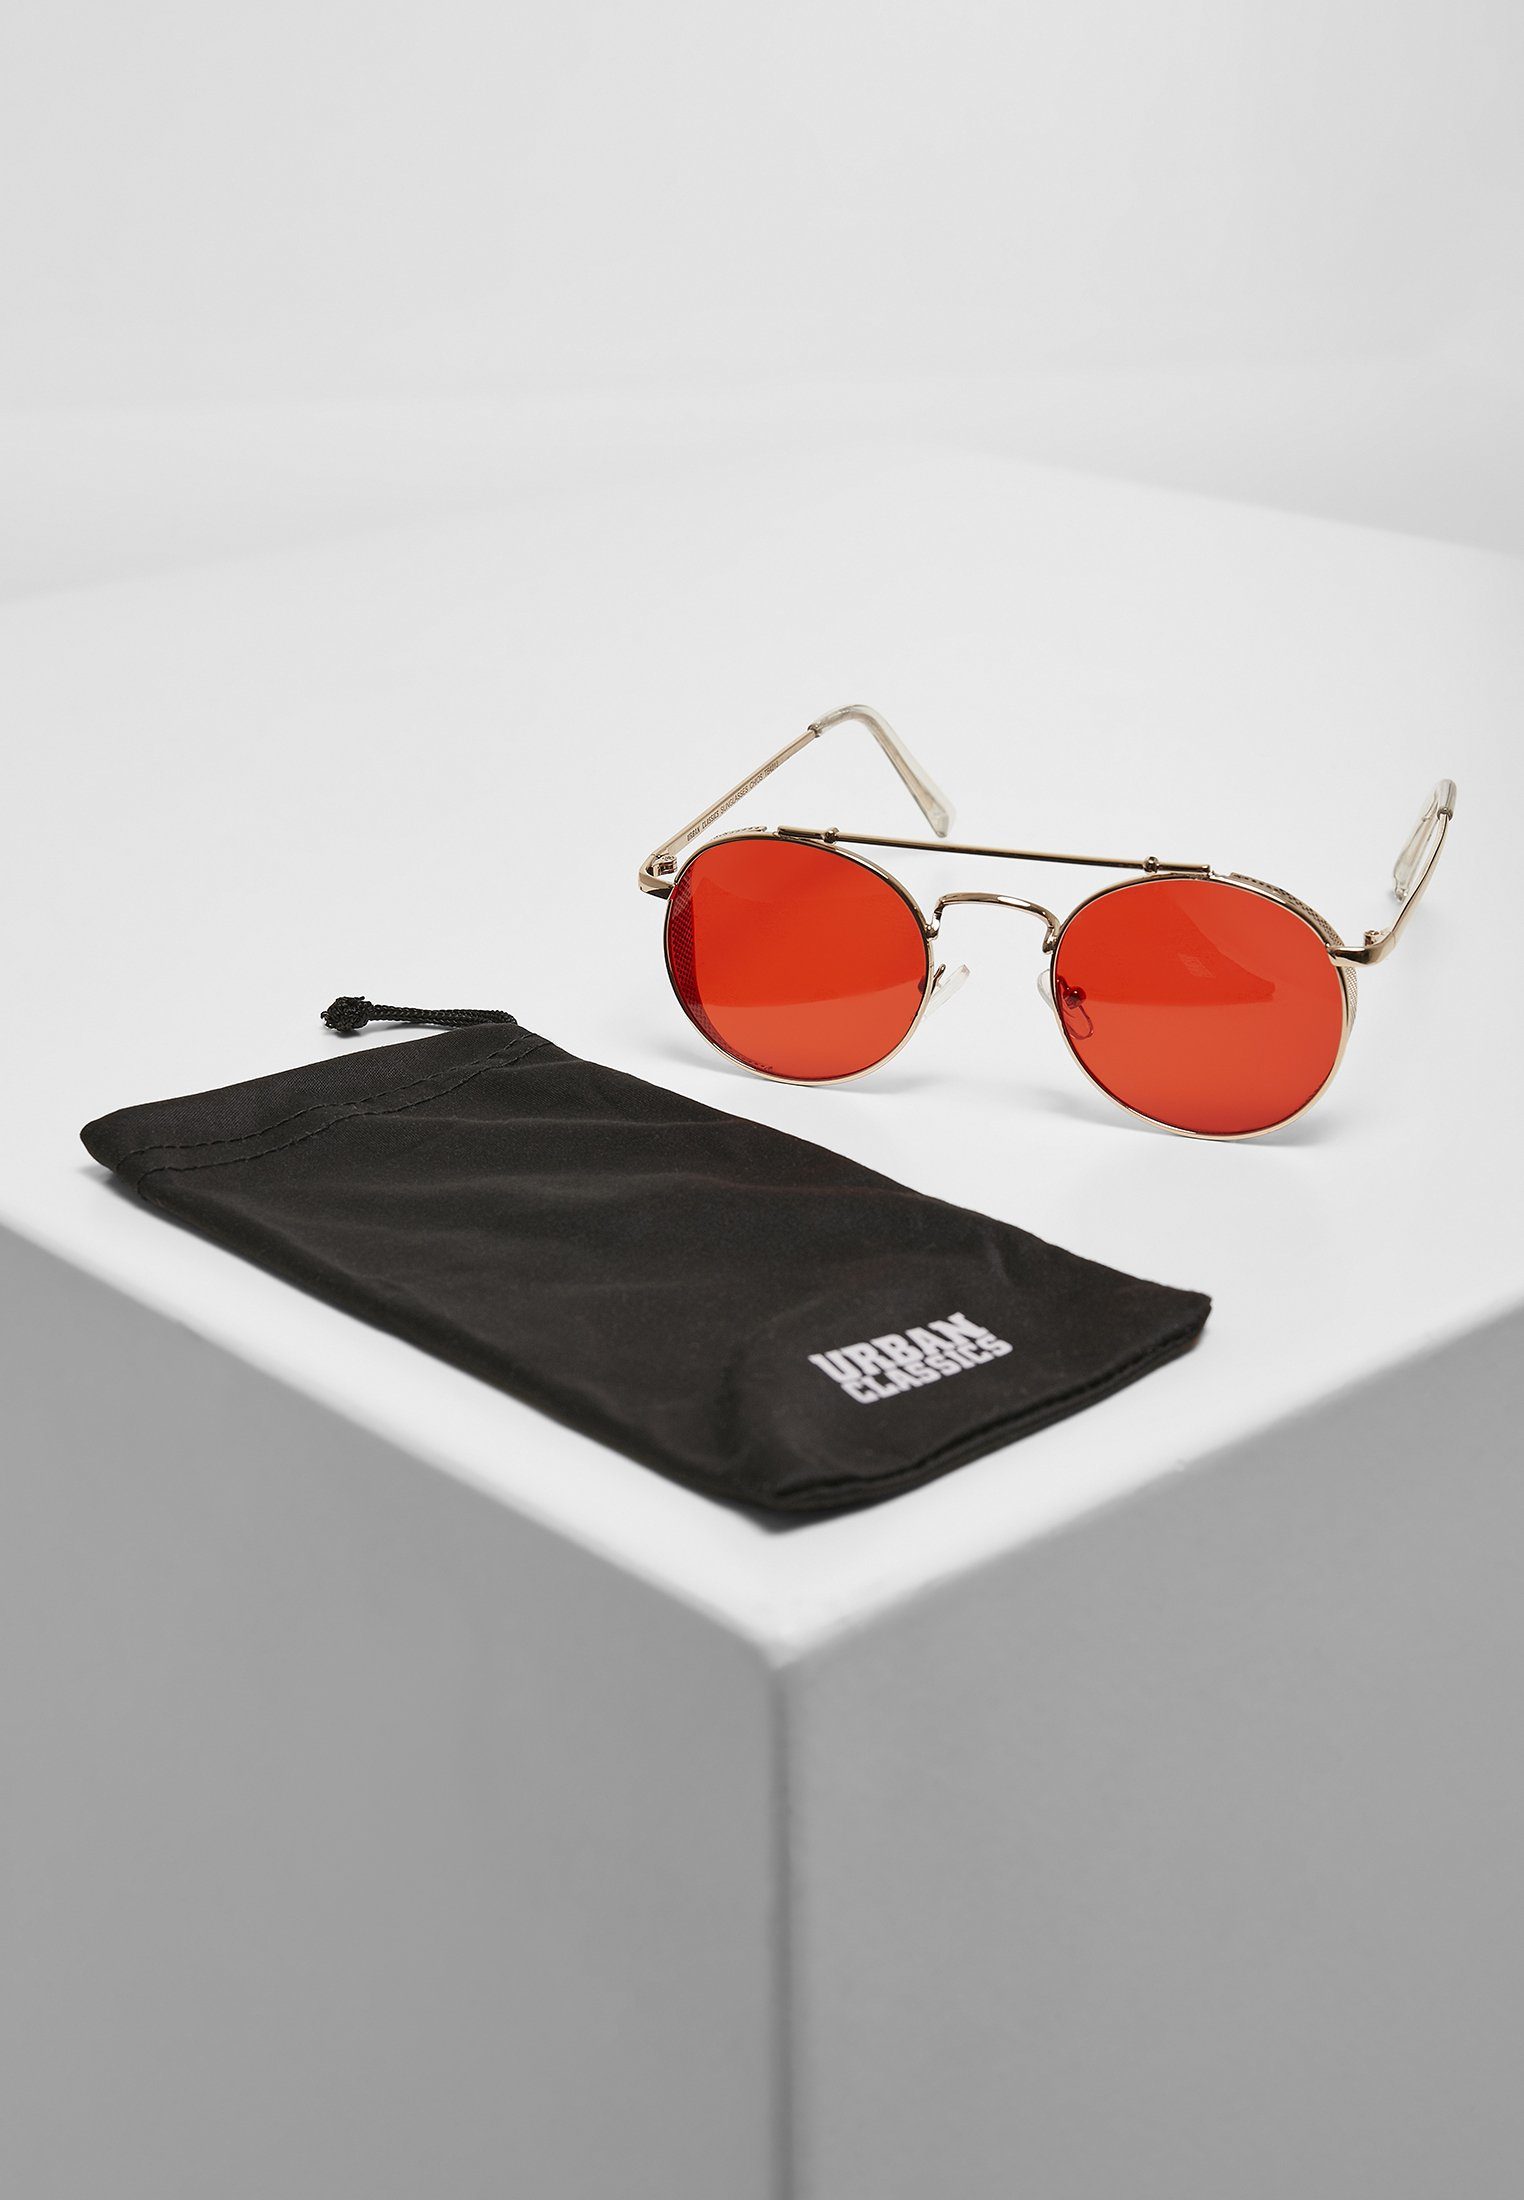 [Eröffnung der Feier! Großer Release-Verkauf läuft] URBAN CLASSICS Sonnenbrille Unisex Sunglasses gold/red Chios